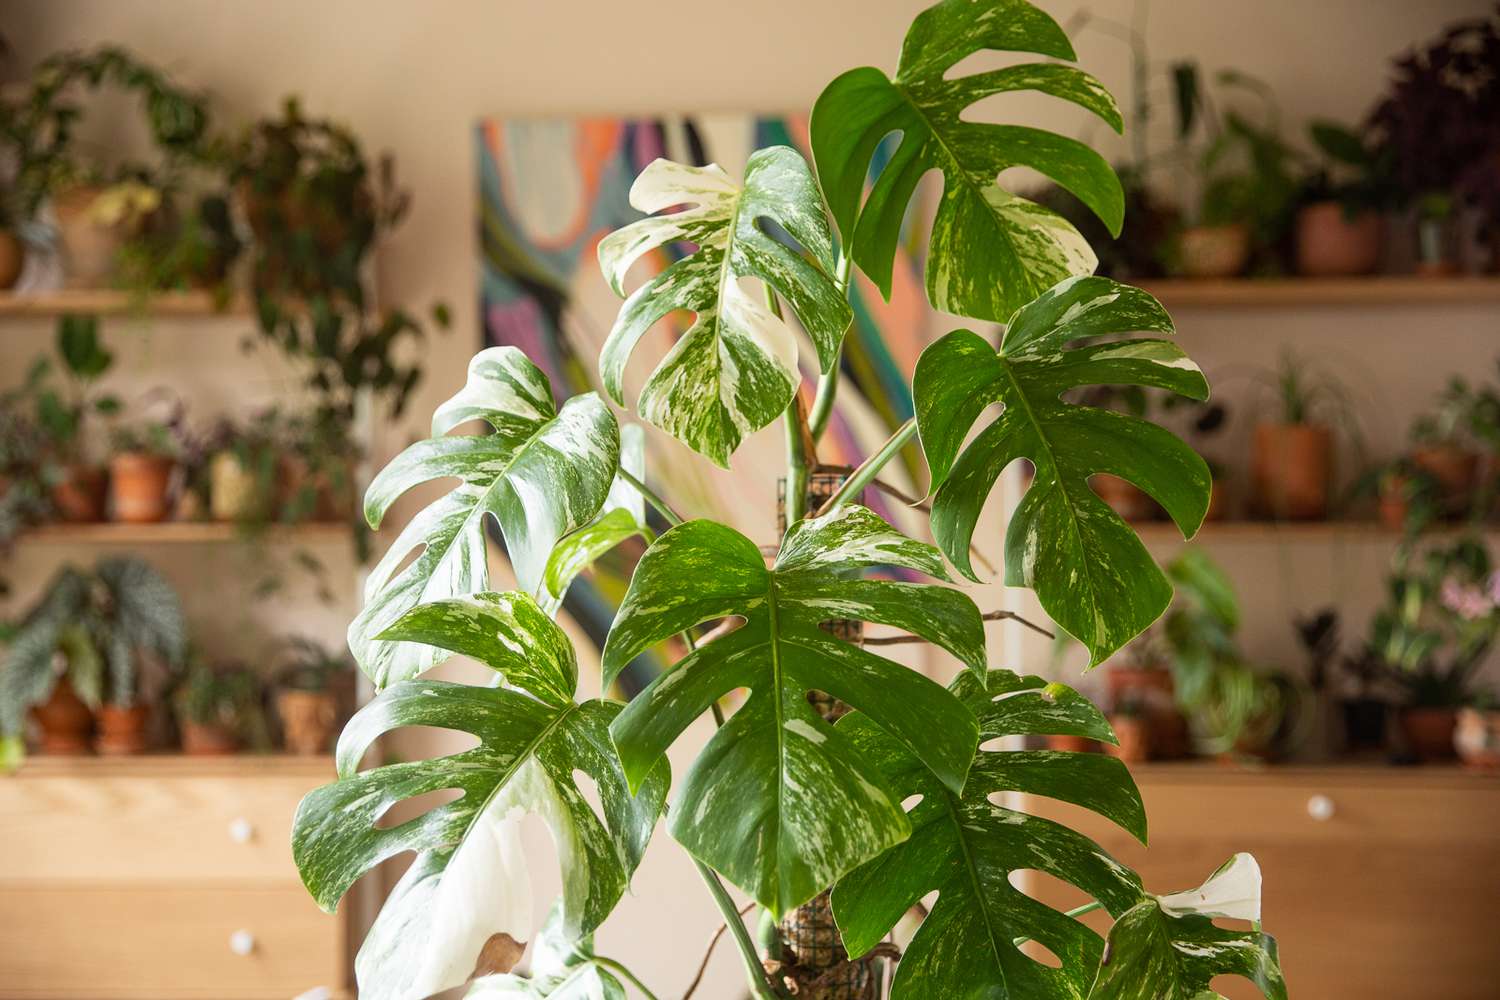 Teure weiß und grün panaschierte Monstera vor Zimmerpflanzen